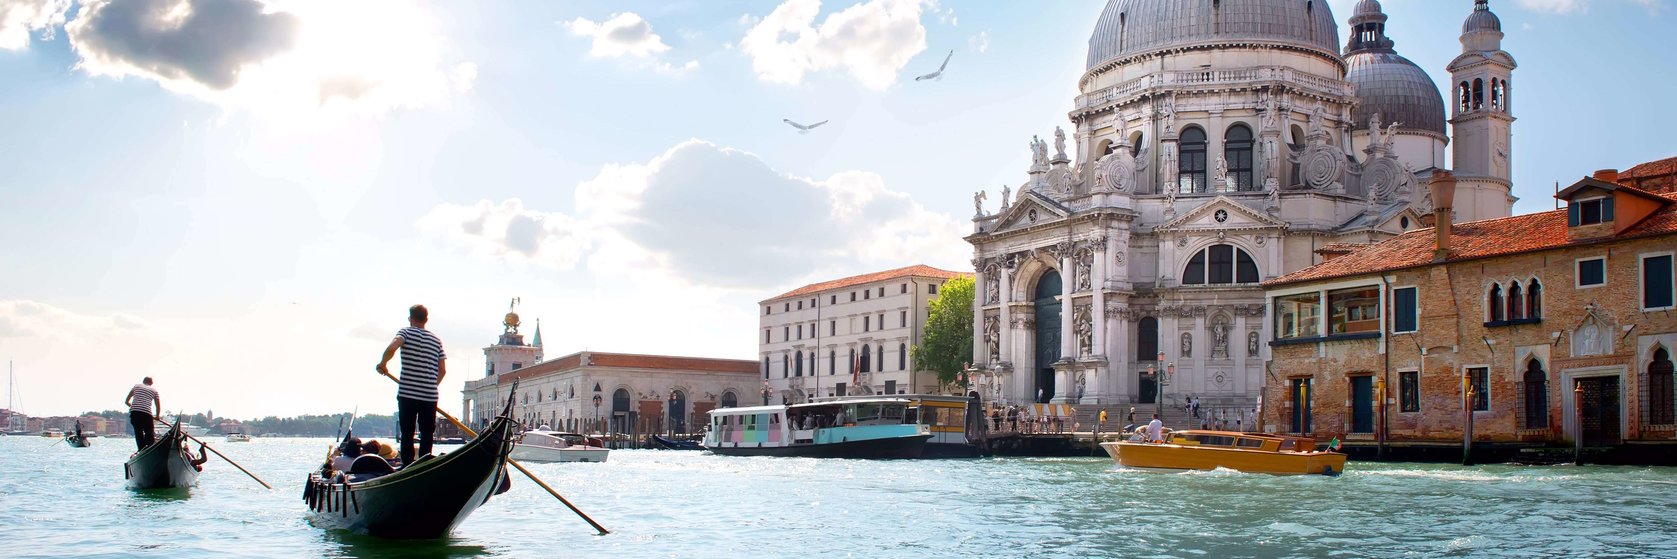 Tipy na výlety v Benátkách